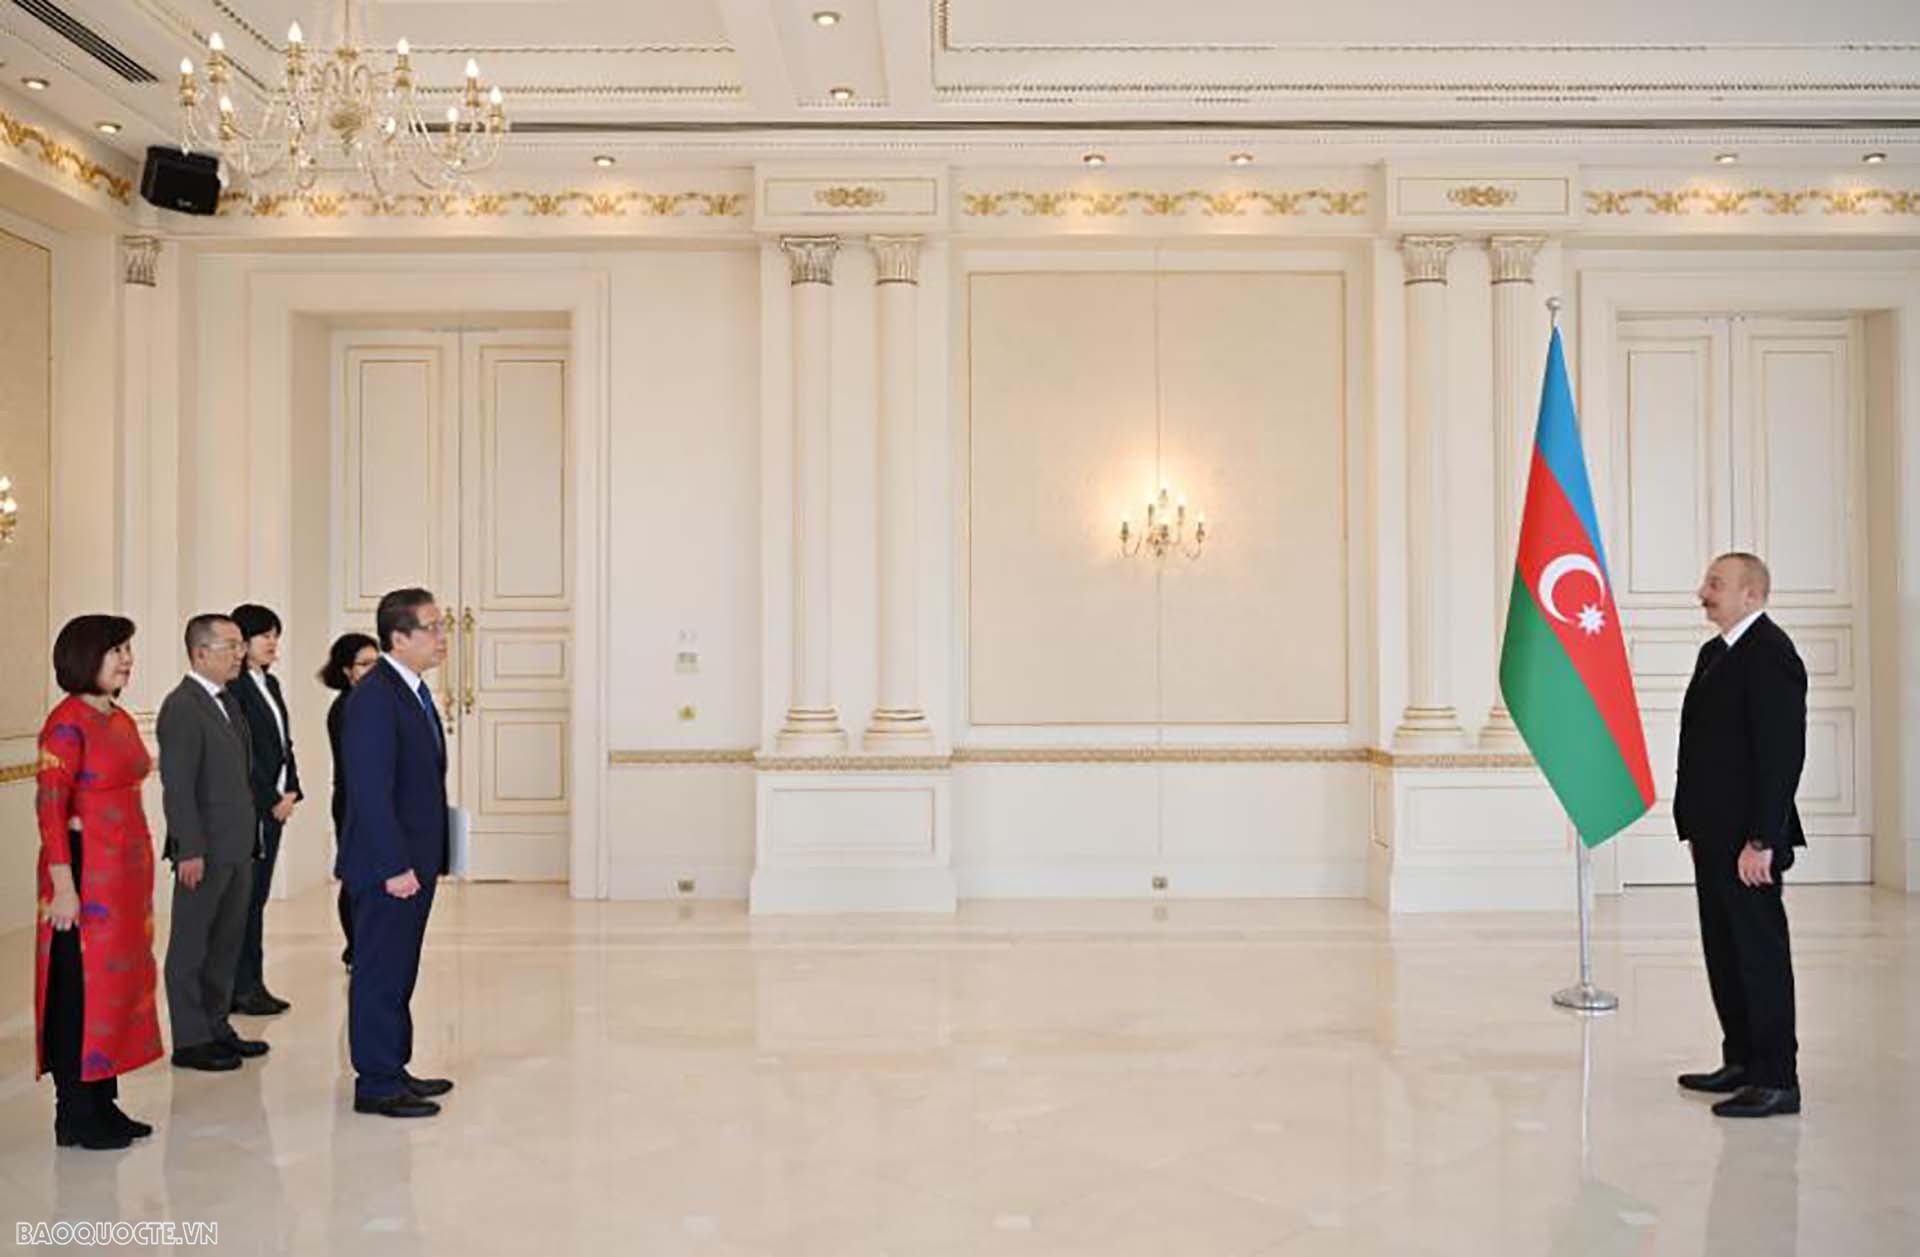 Đại sứ Đặng Minh Khôi trình Thư ủy nhiệm lên Tổng thống Cộng hòa Azerbaijan Ilham Aliyev.